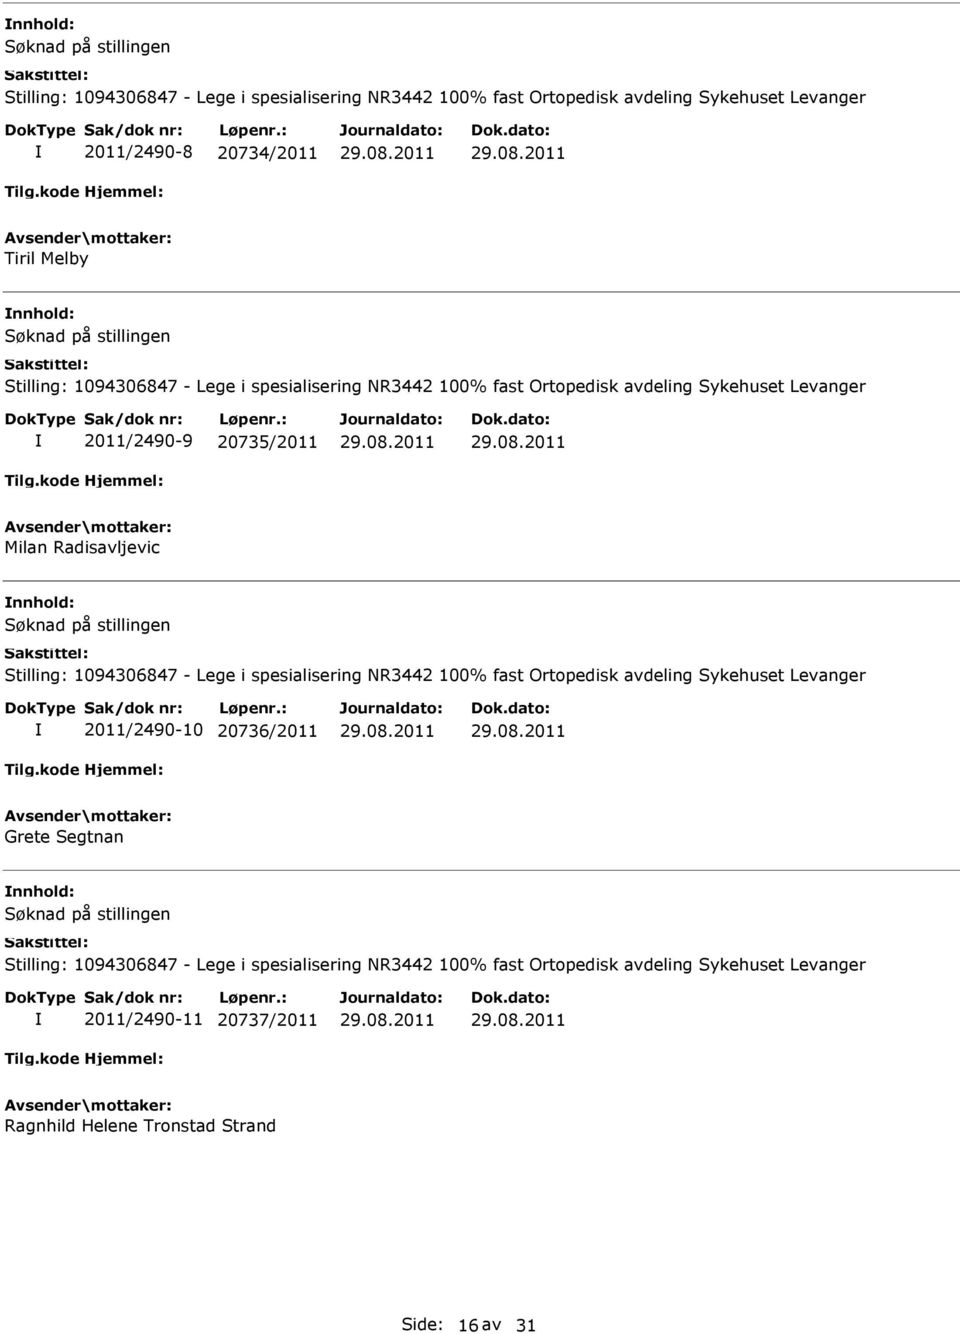 1094306847 - Lege i spesialisering NR3442 100% fast Ortopedisk avdeling Sykehuset Levanger 2011/2490-10 20736/2011 Grete Segtnan Stilling: